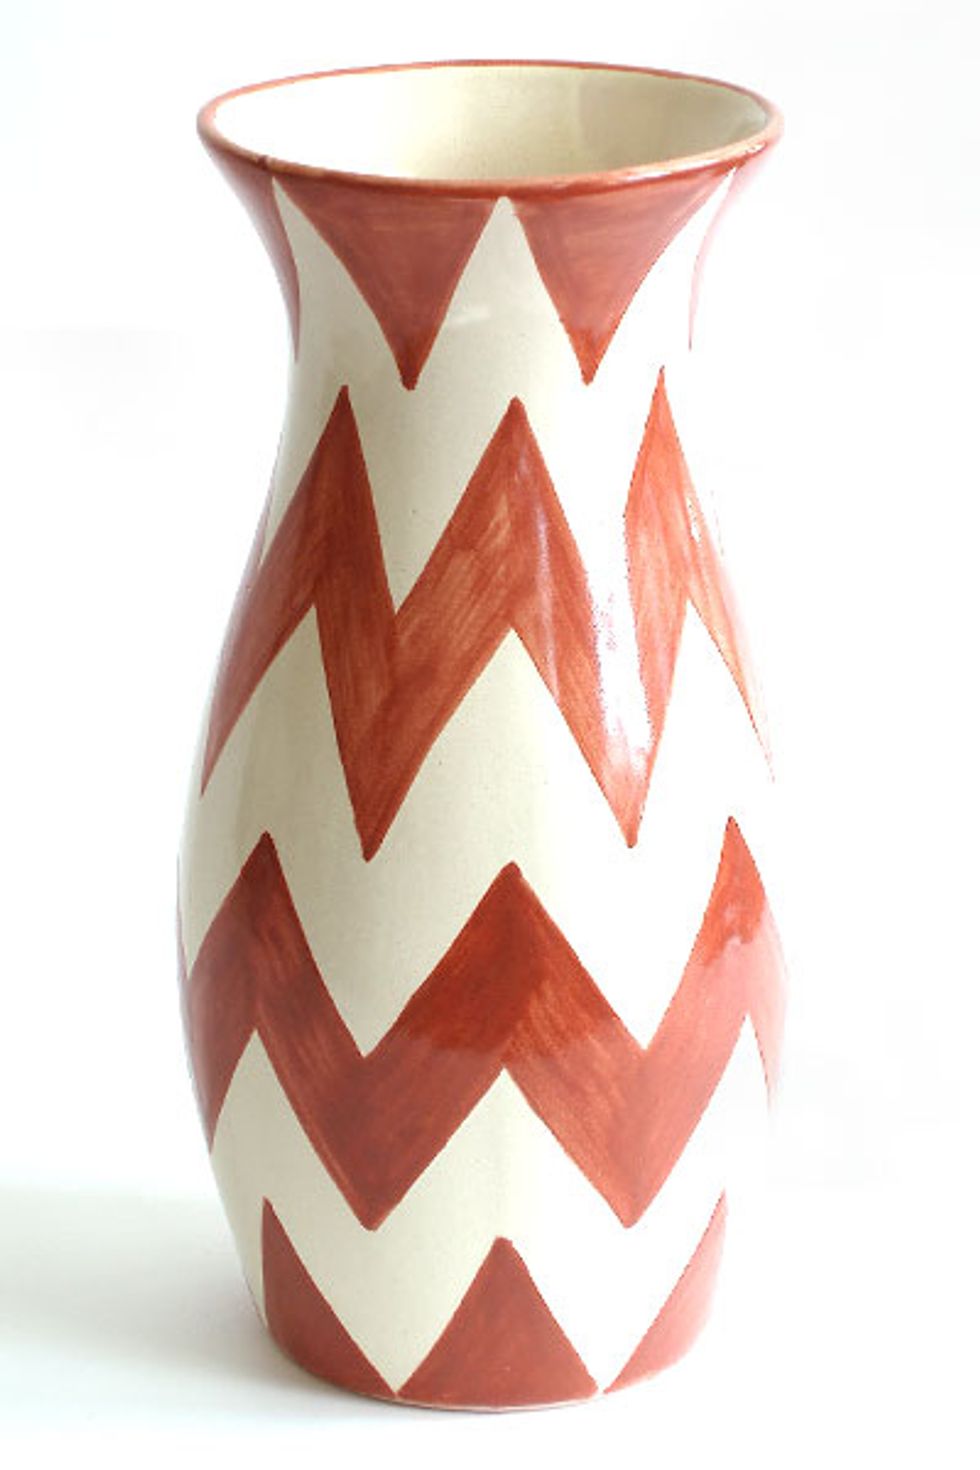 Vases from SF's Emilia Ceramics